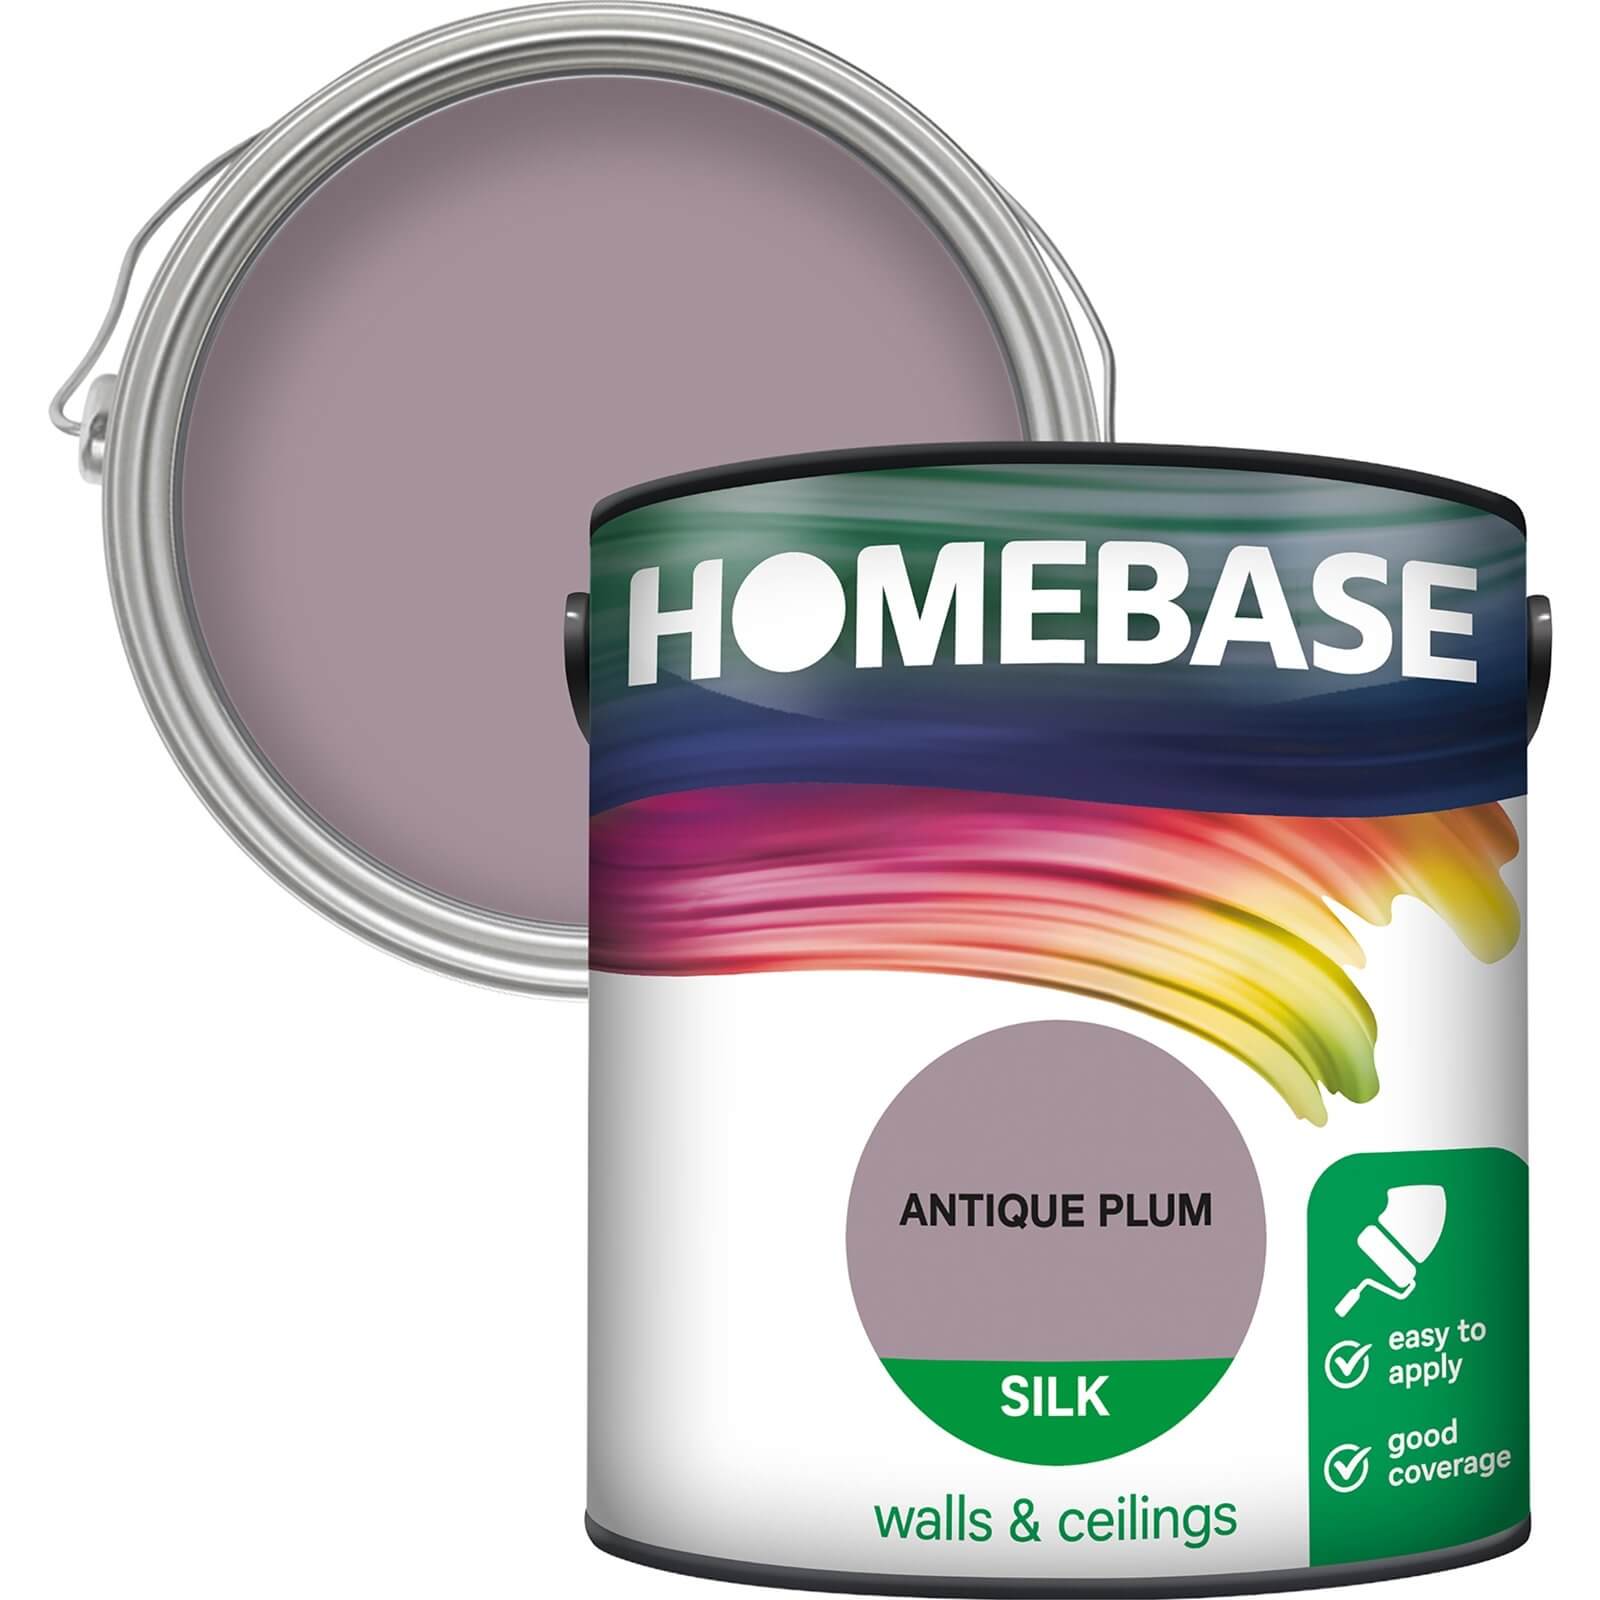 Homebase Silk Emulsion Paint Antique Plum - 2.5L